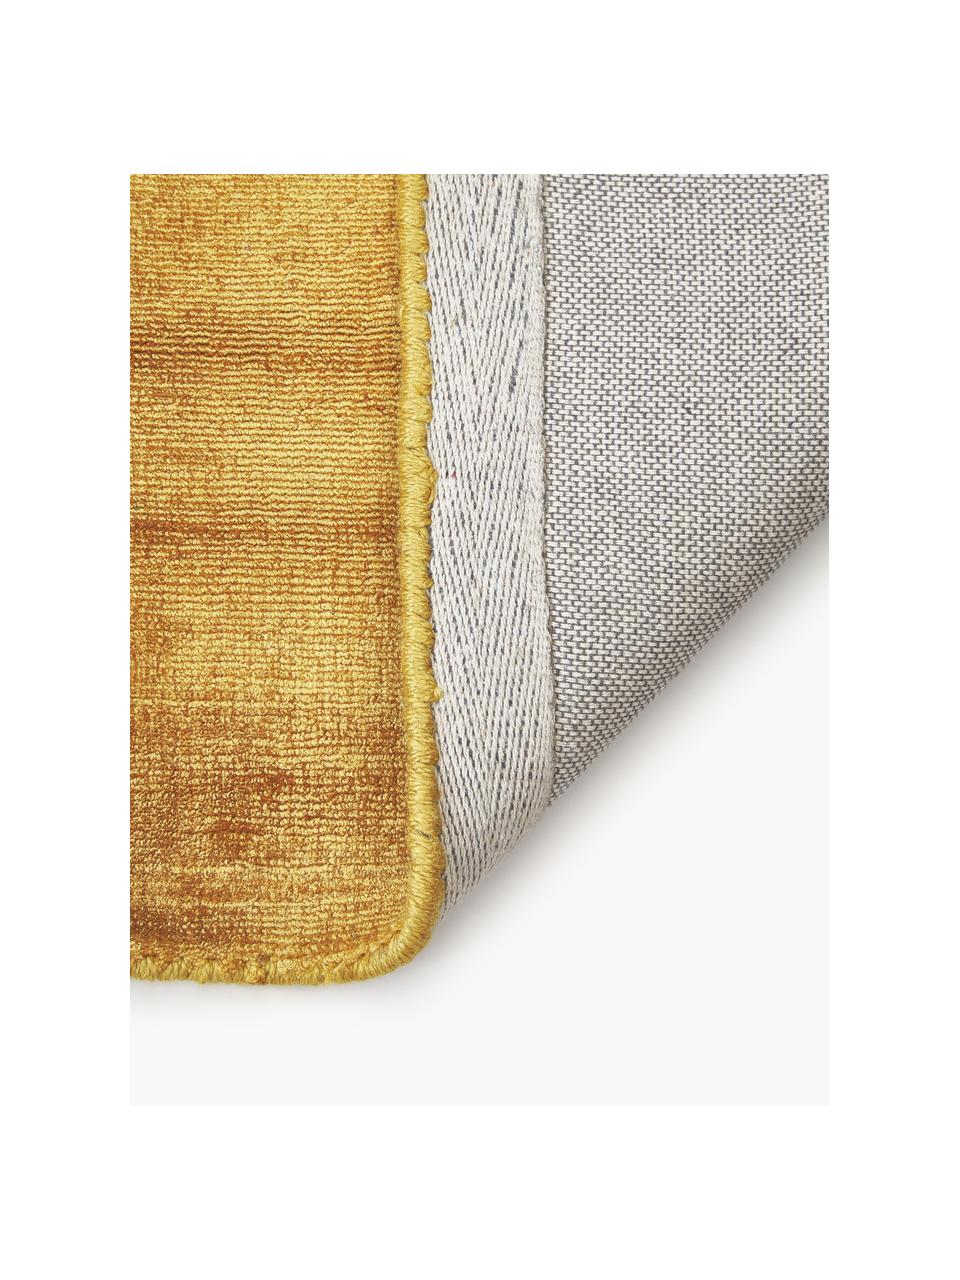 Tappeto in viscosa fatto a mano Jane, Retro: 100% cotone, Giallo sole, Larg. 200 x Lung. 300 cm (taglia L)